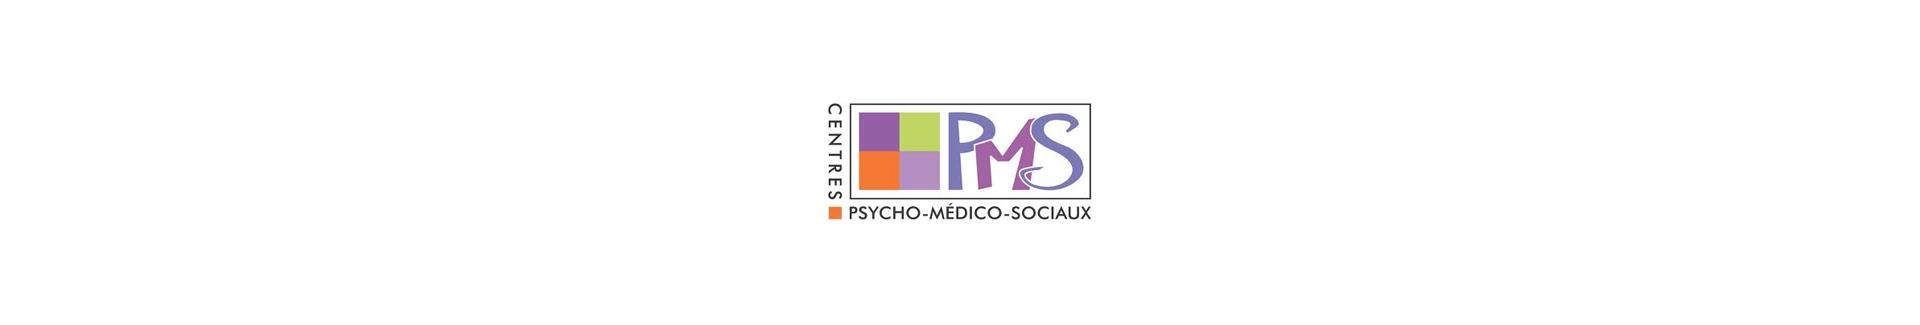 Bannière centre PMS - logo PMS